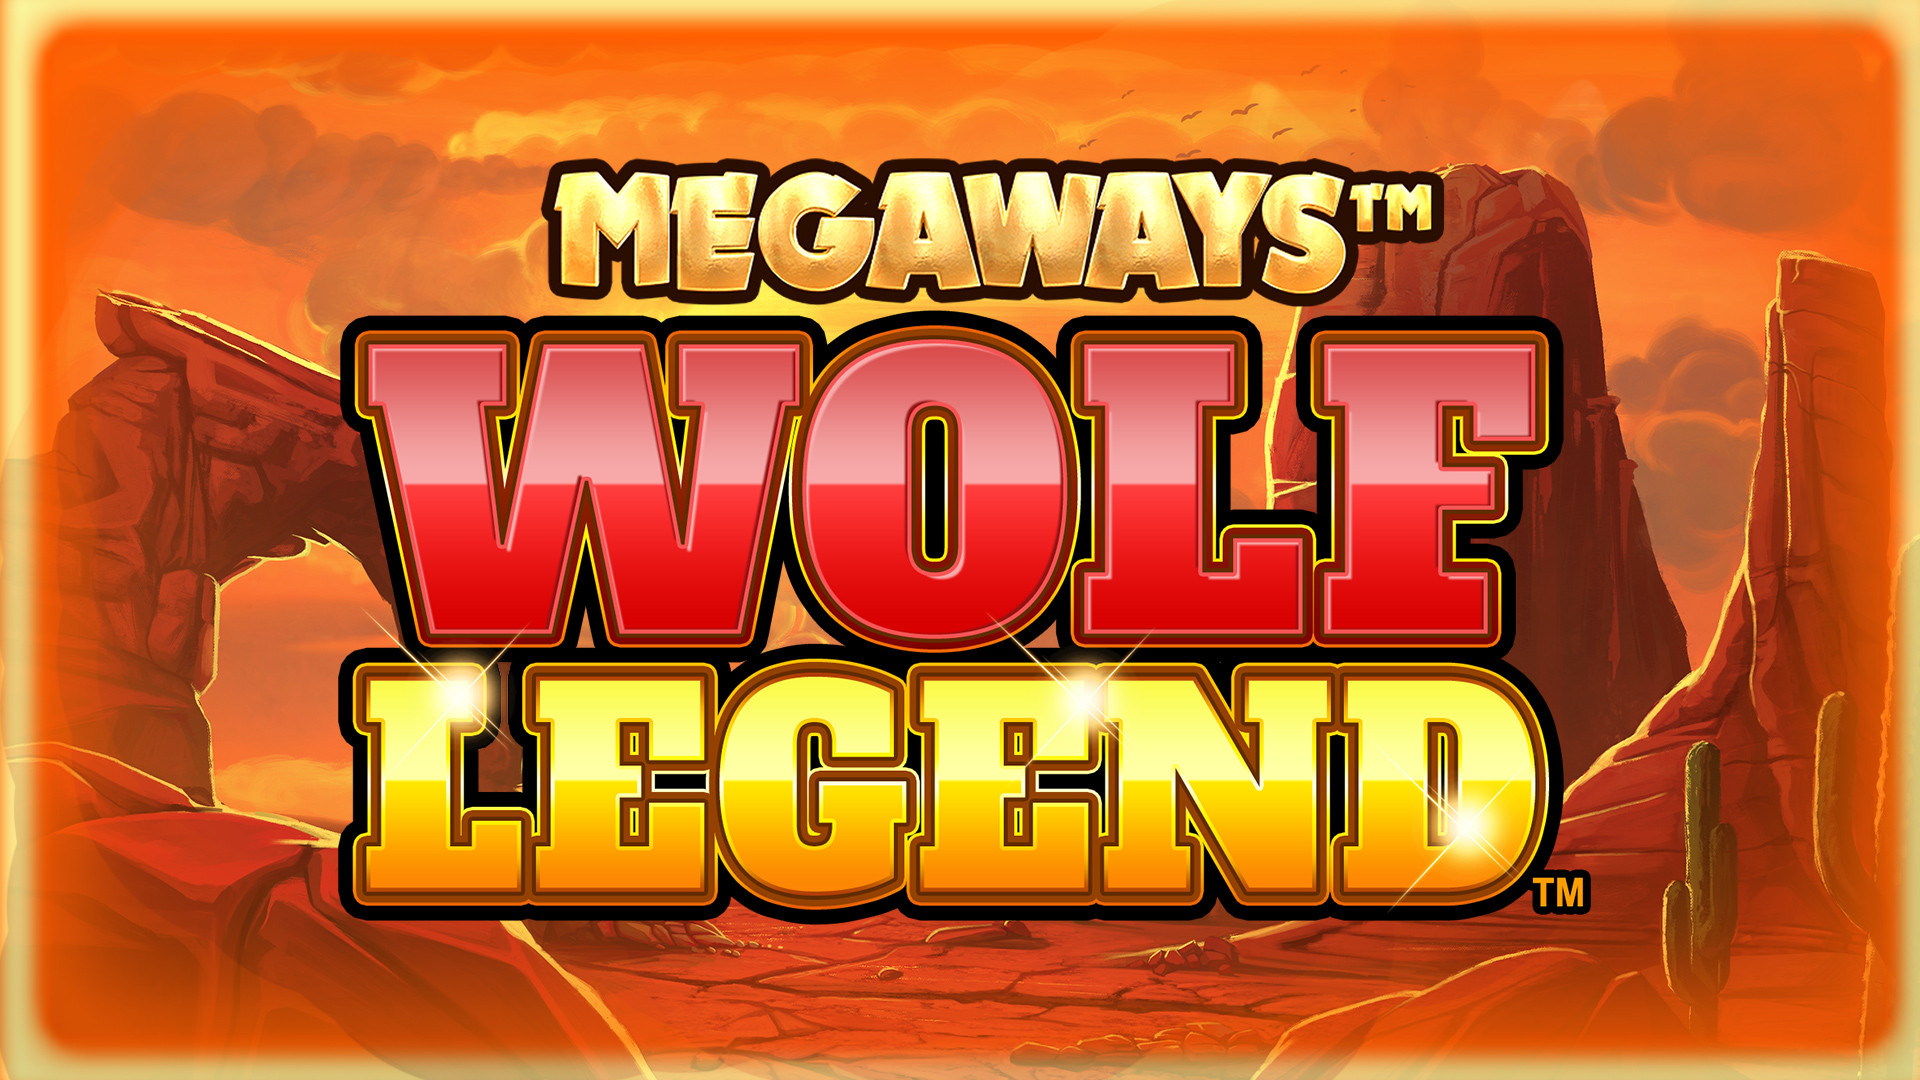 Wolf Legend MEGAWAYS